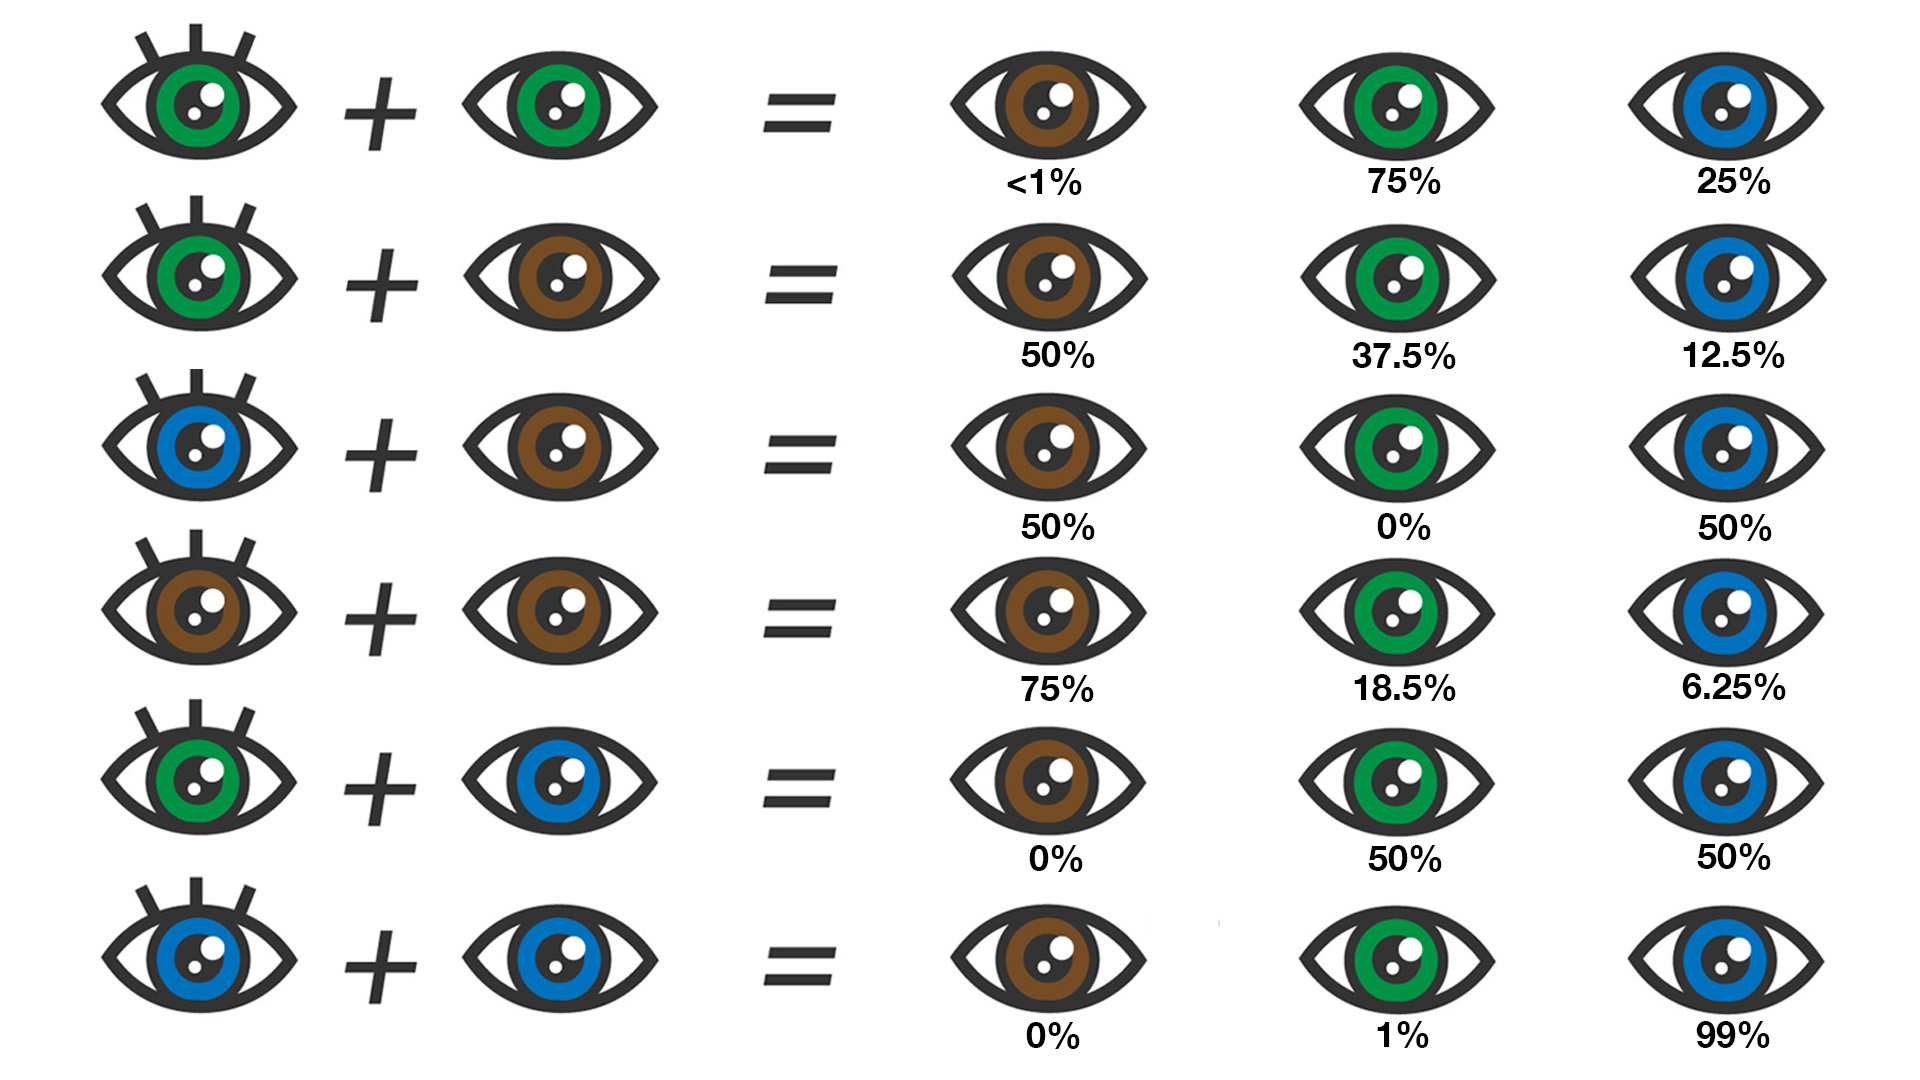 определение цвета глаз онлайн по фото